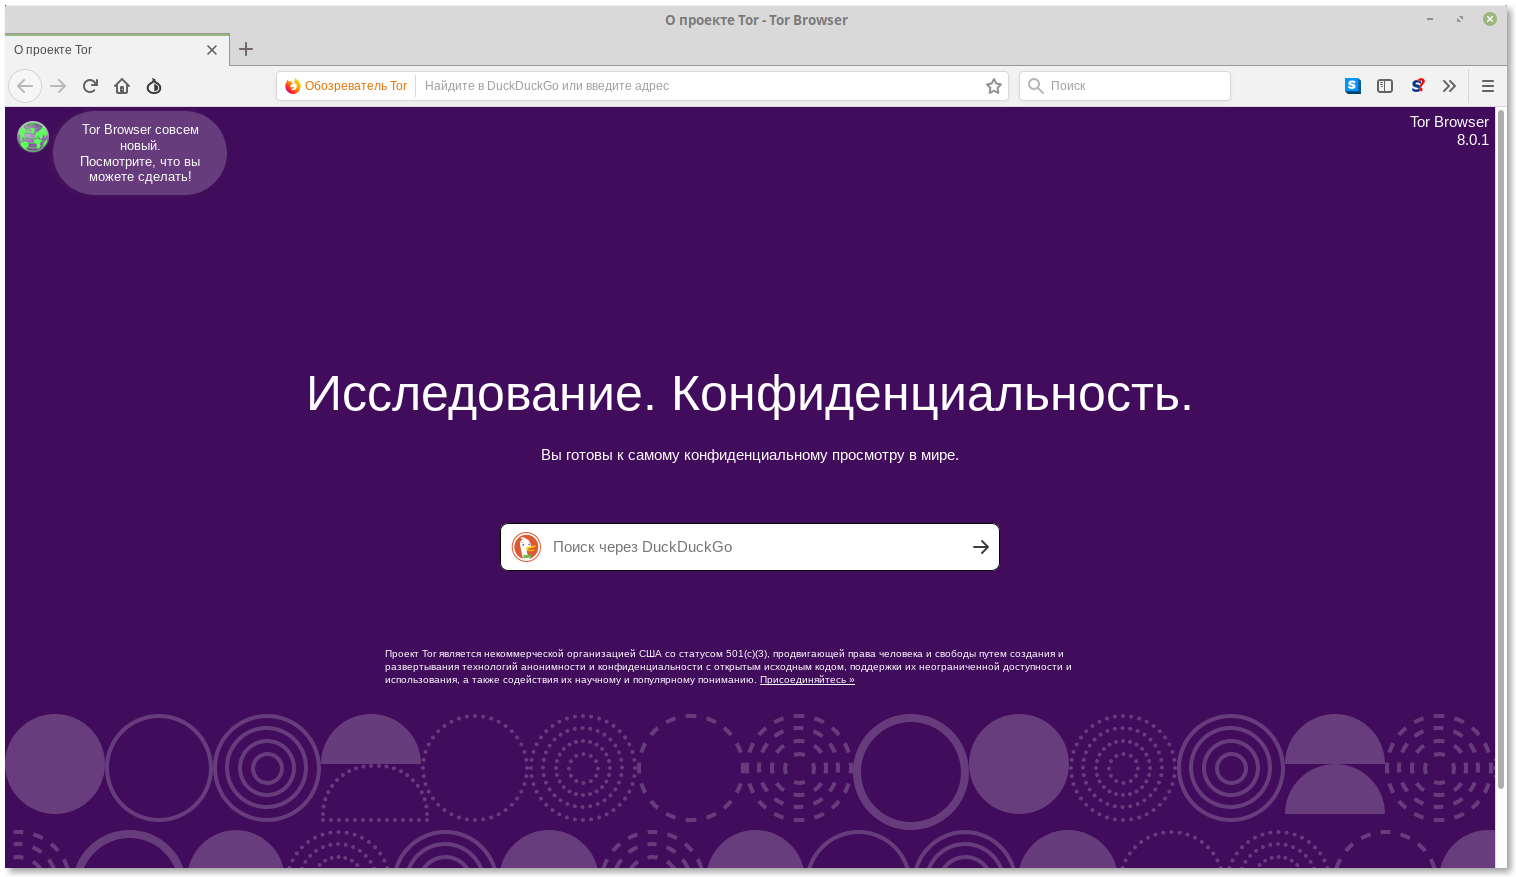 Скачать тор браузер на русском 64 бит hidra бесплатно скачать программа браузер тор gidra